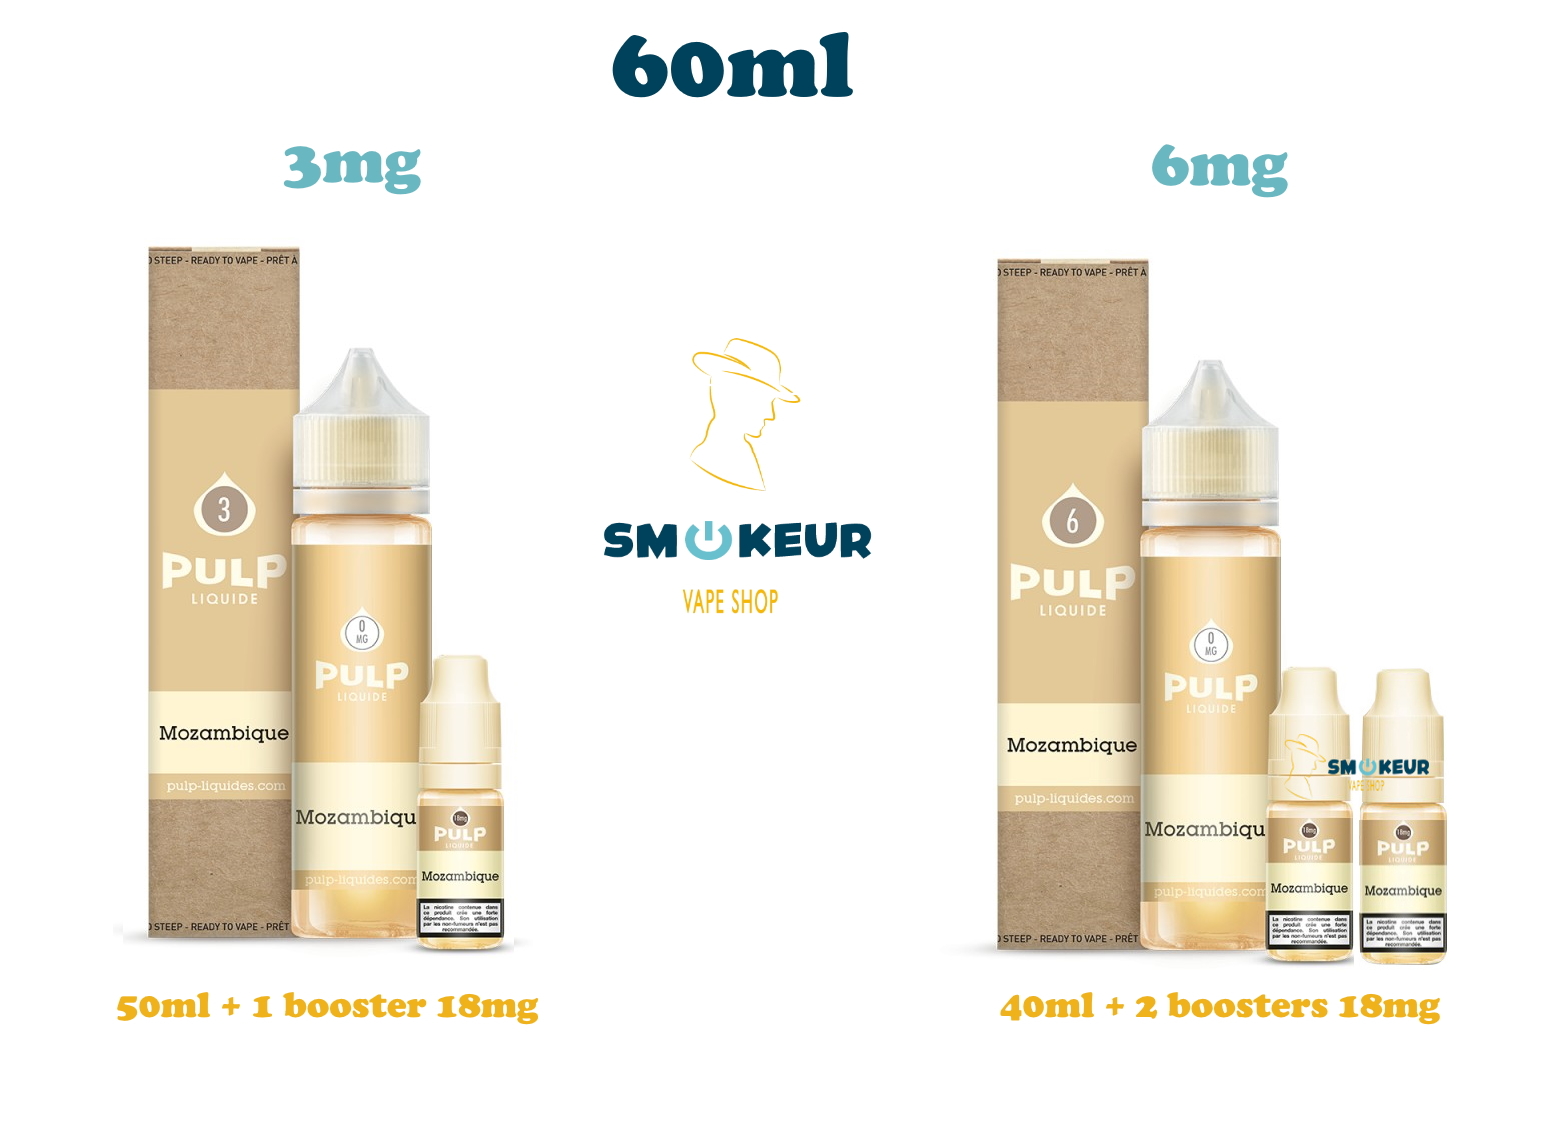 Mozambique 60ml de chez pulp en 3 mg de nicotine ou en 6mg de nicotine avec deux boosters